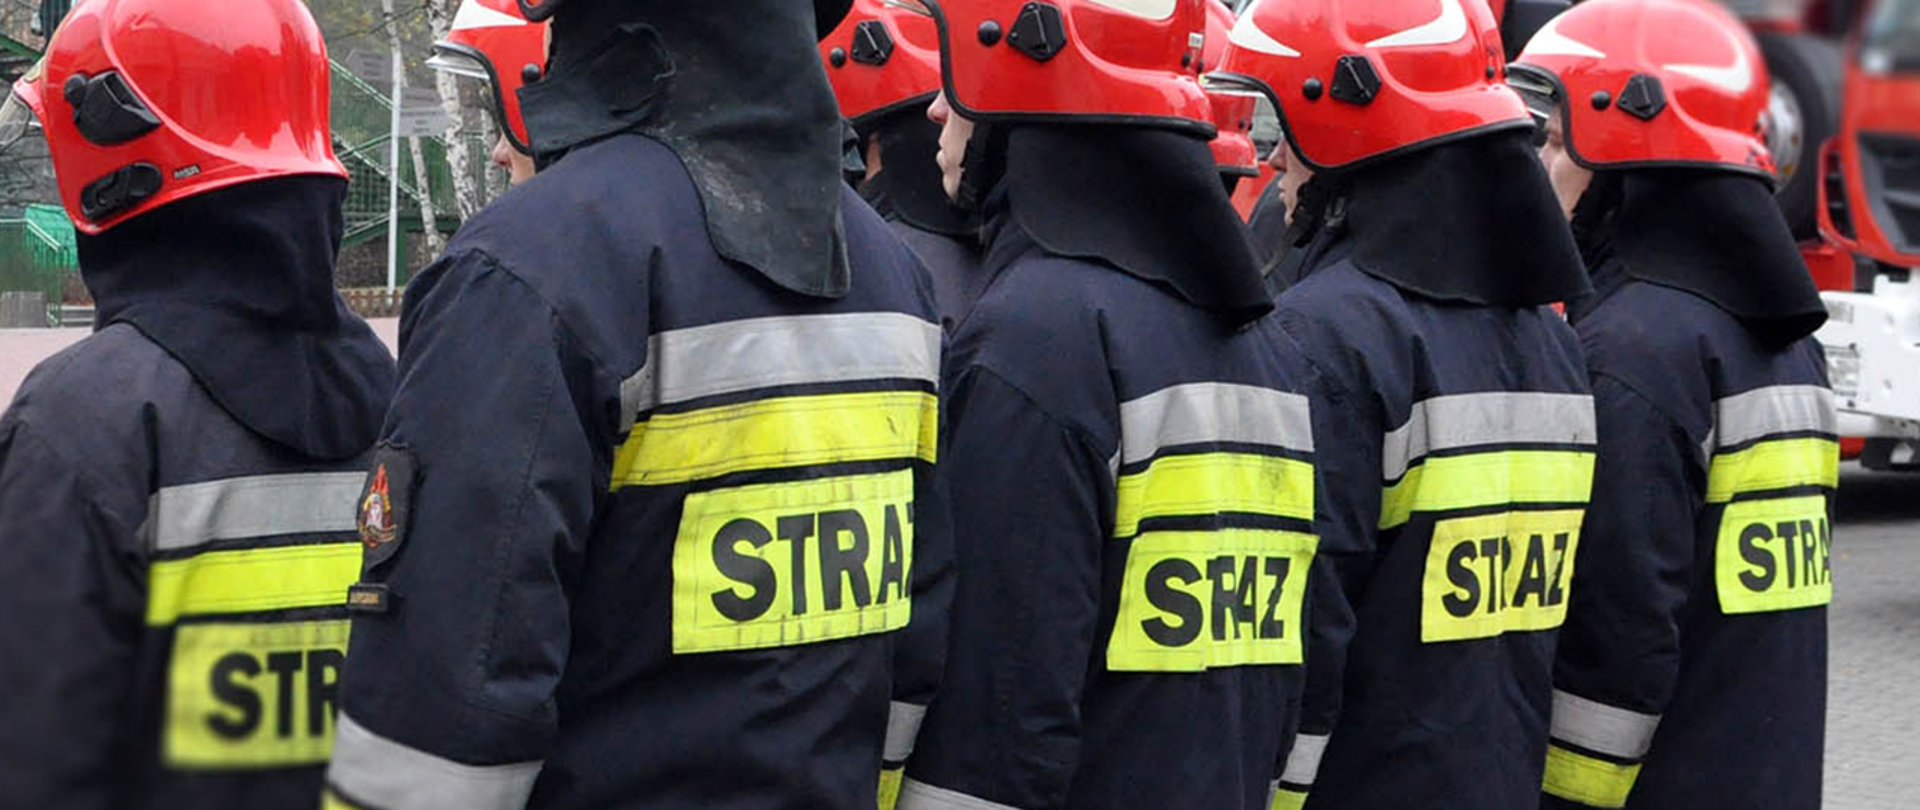 Na zdjęciu widać stojących w dwóch rzędach Strażaków Państwowej Straży Pożarnej w mundurach służbowych stojący tyłem.